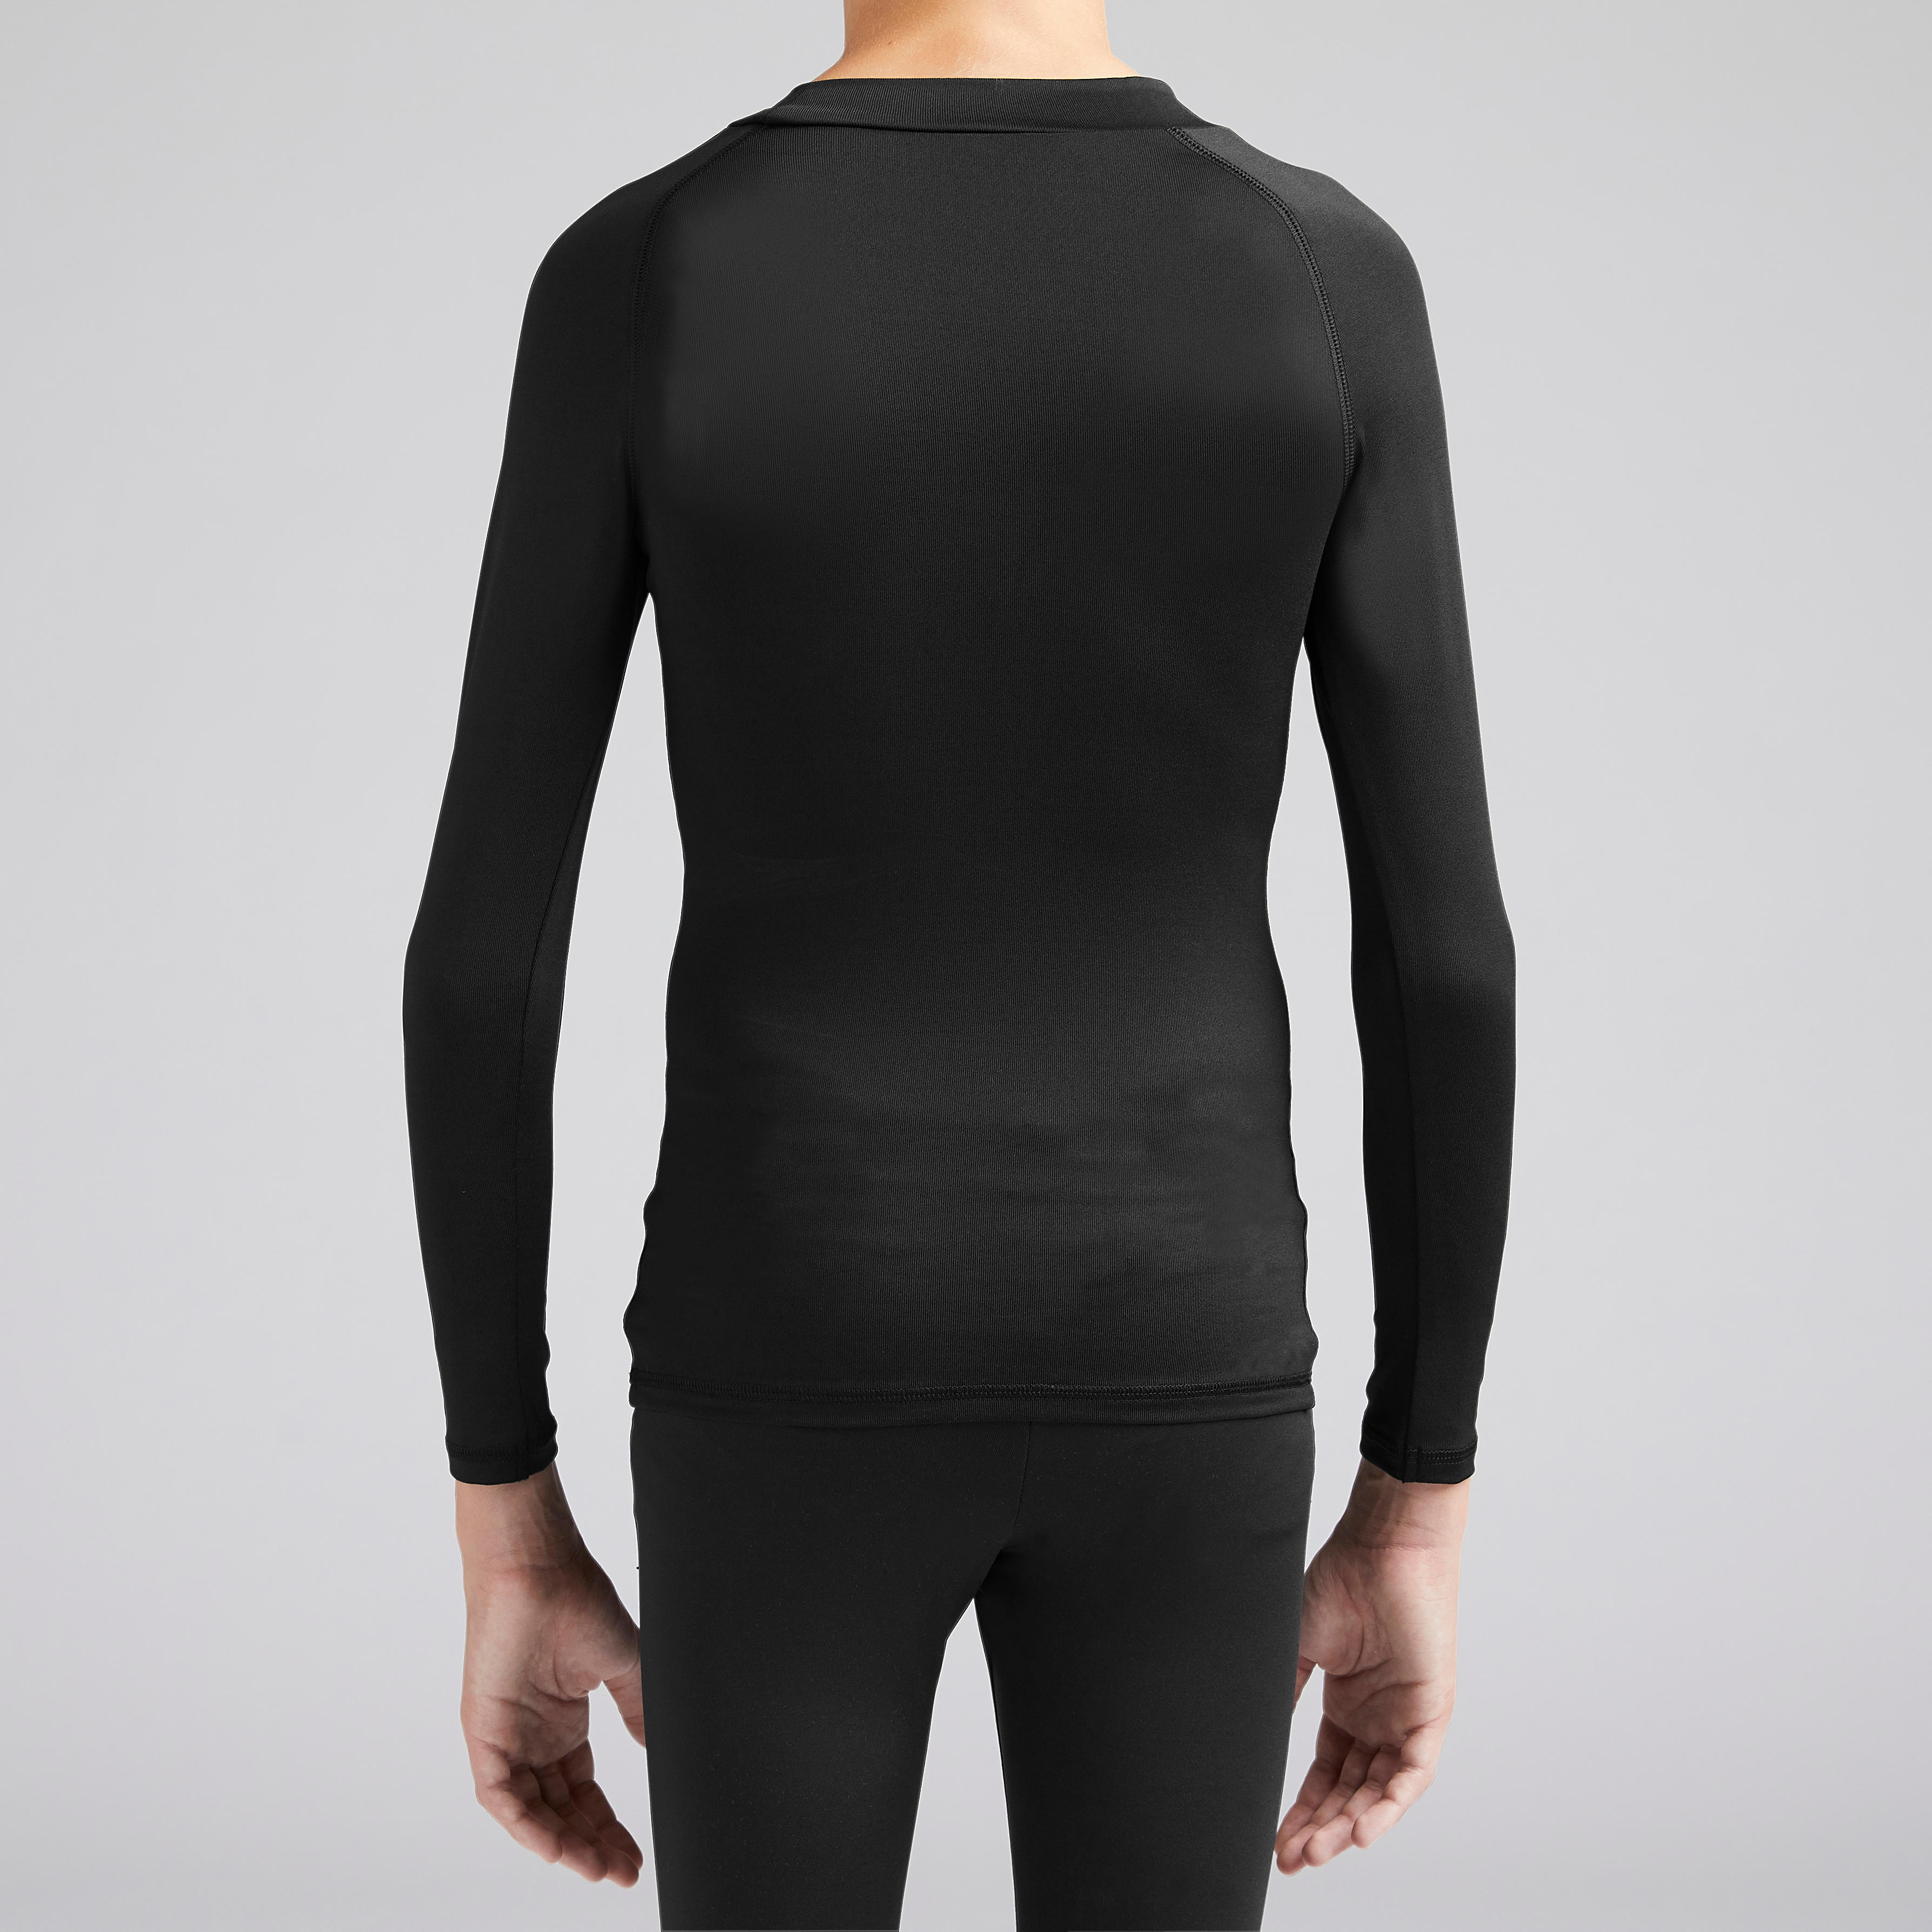 Sous-maillot thermique à manches longues pour enfants - Keepcomfort 100 noir - KIPSTA